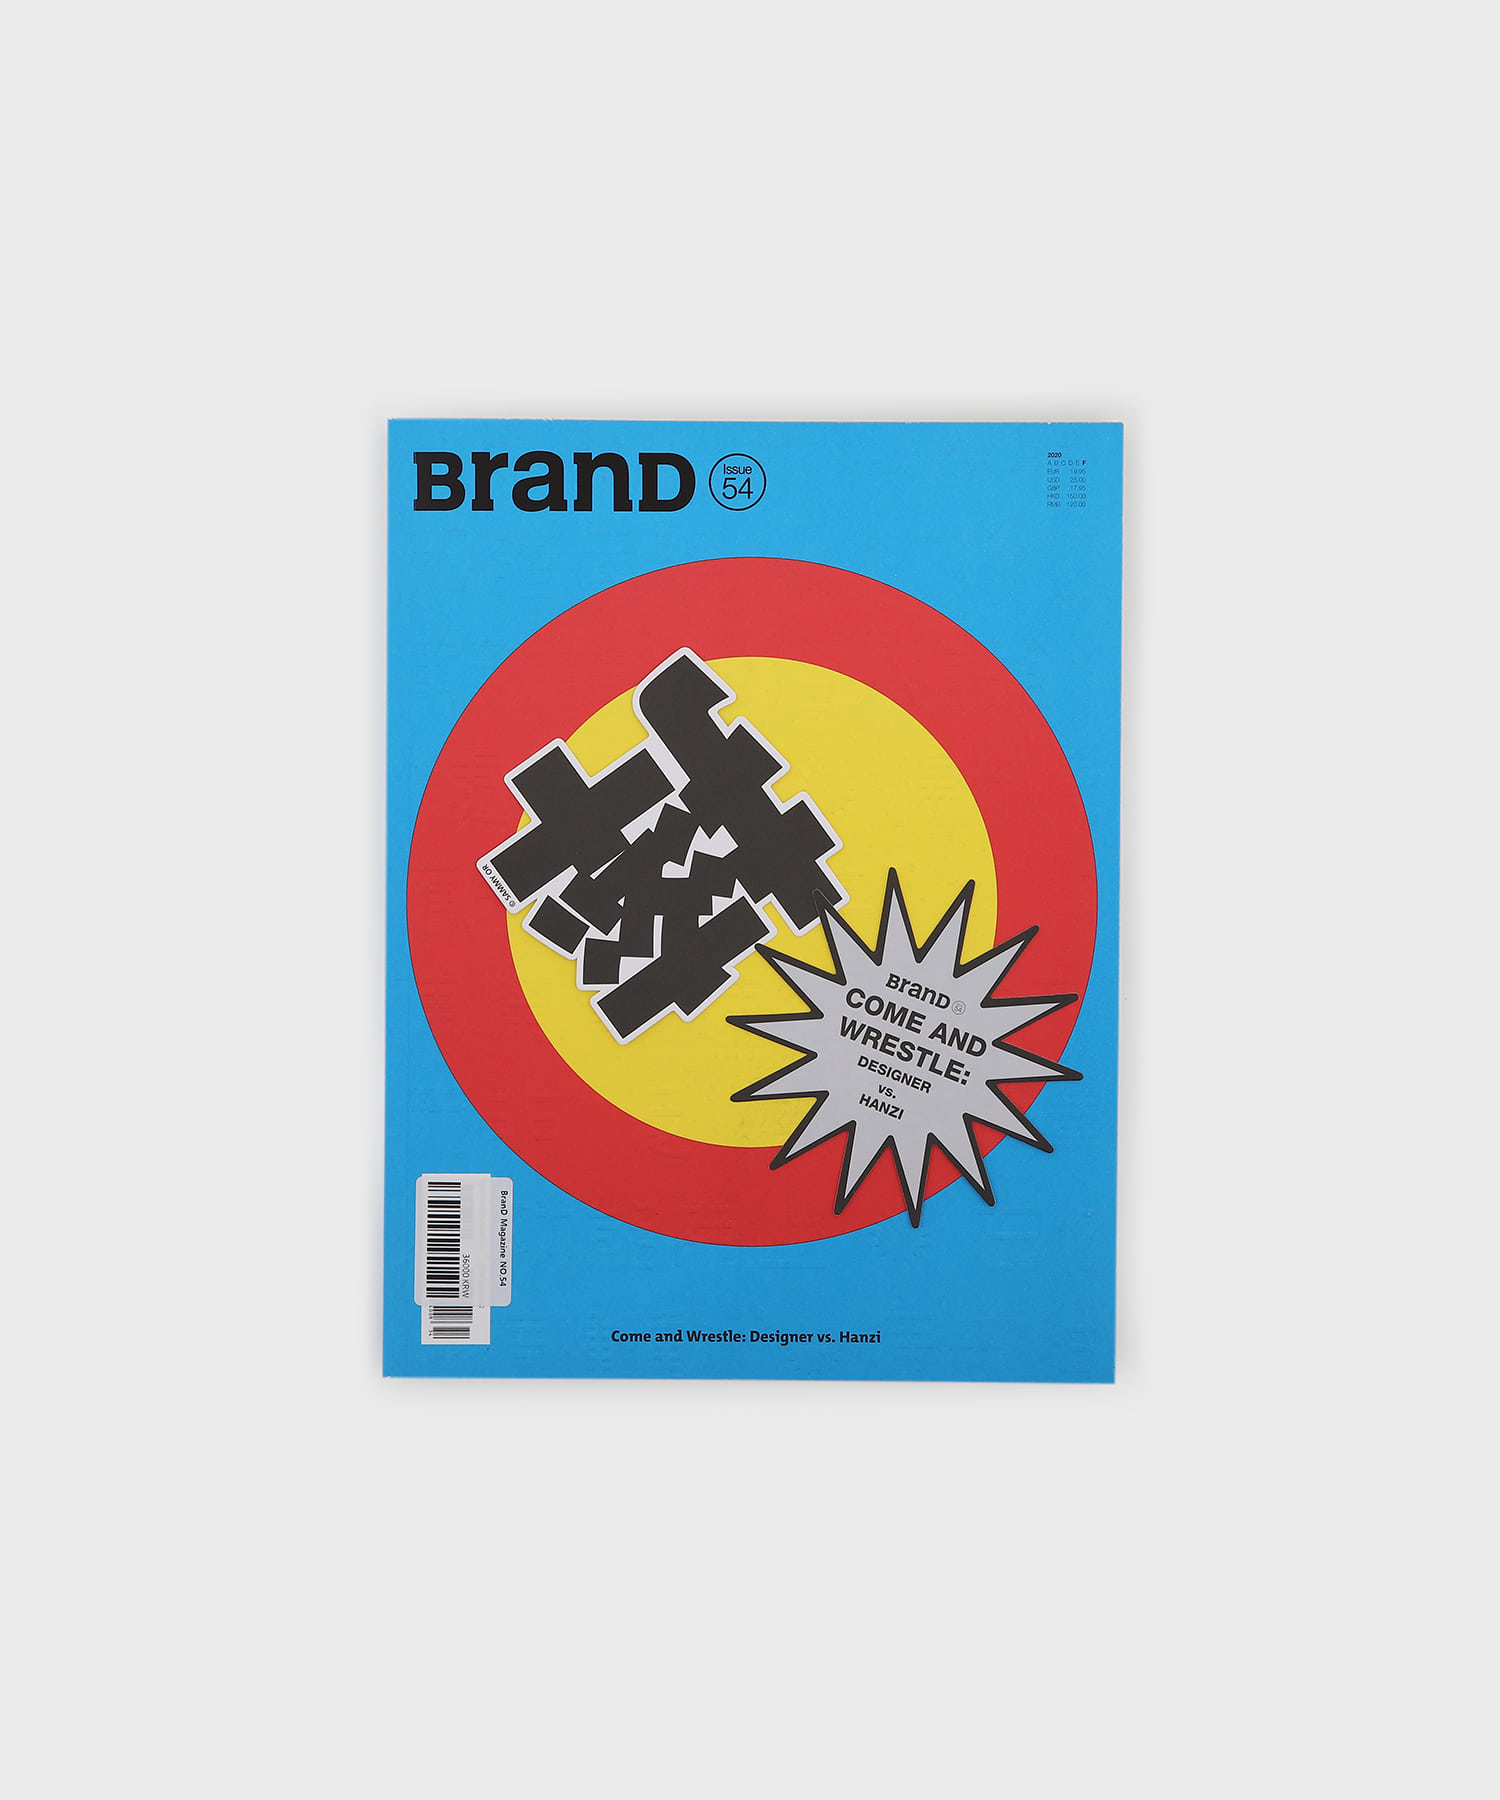 BranD No.54 : Come and Wrestle: Designer vs. Hanzi